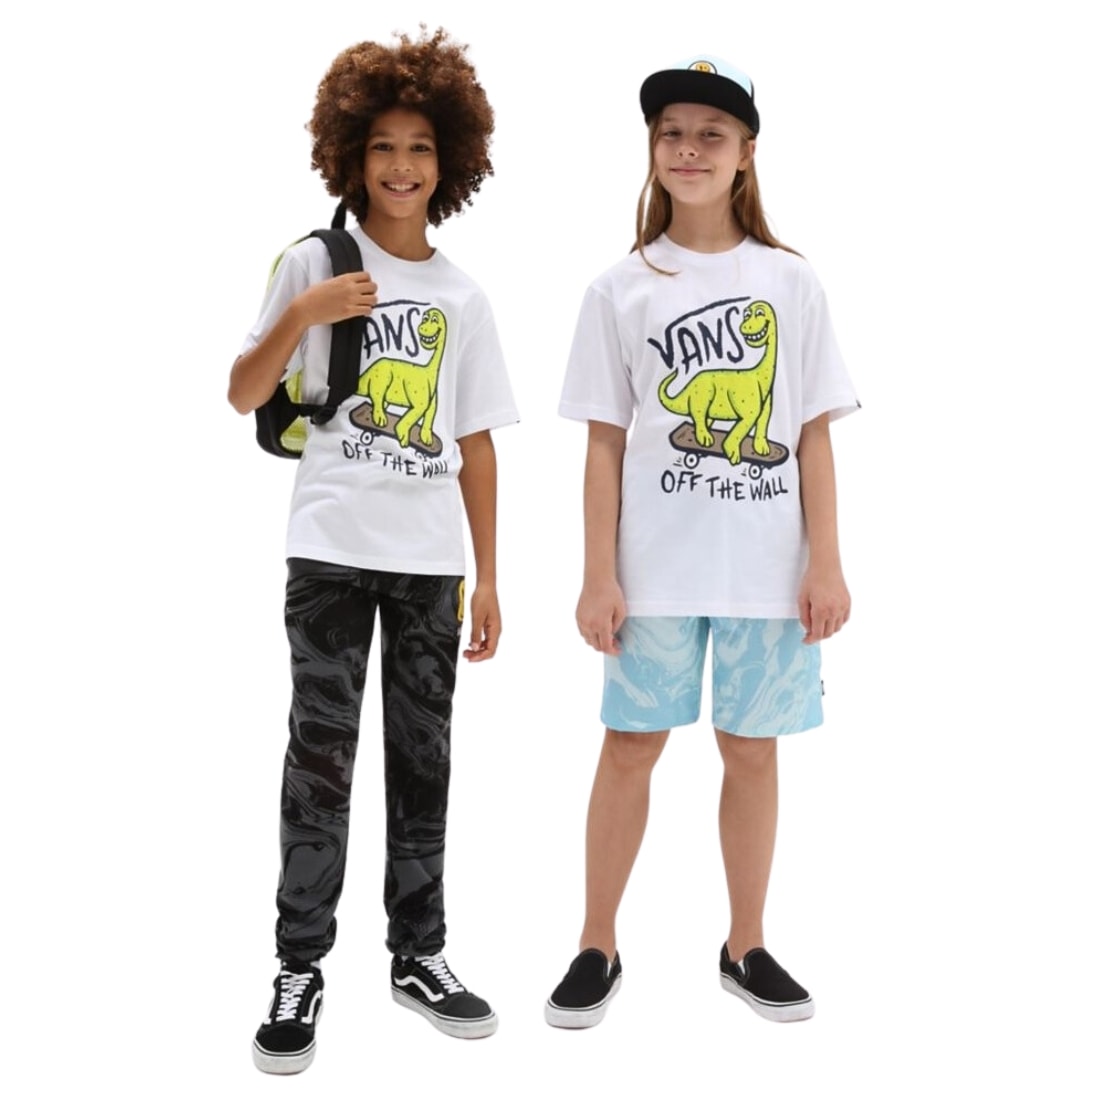 Vans Kids Dino Sk8 Boys T-Shirt - White - Boys Skate Brand T-Shirt by Vans